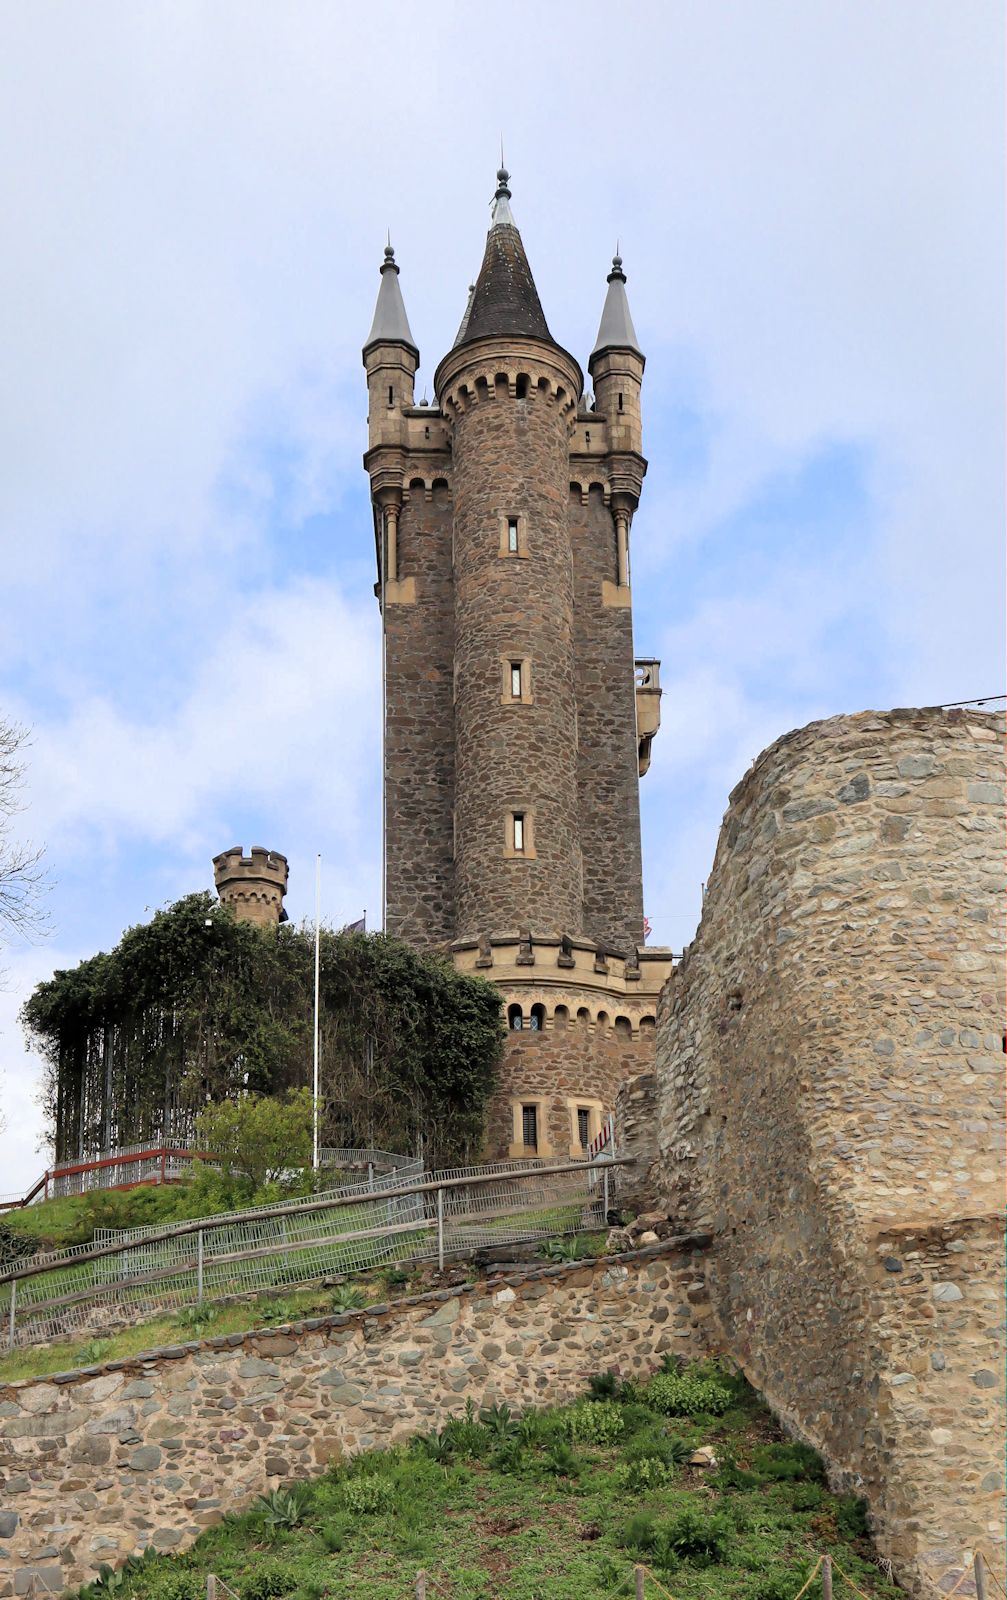 Nach Wilhelm benannter Turm, errichtet 1872 bis 1875 an der Stelle des ehemaligen Schlosses in Dillenburg